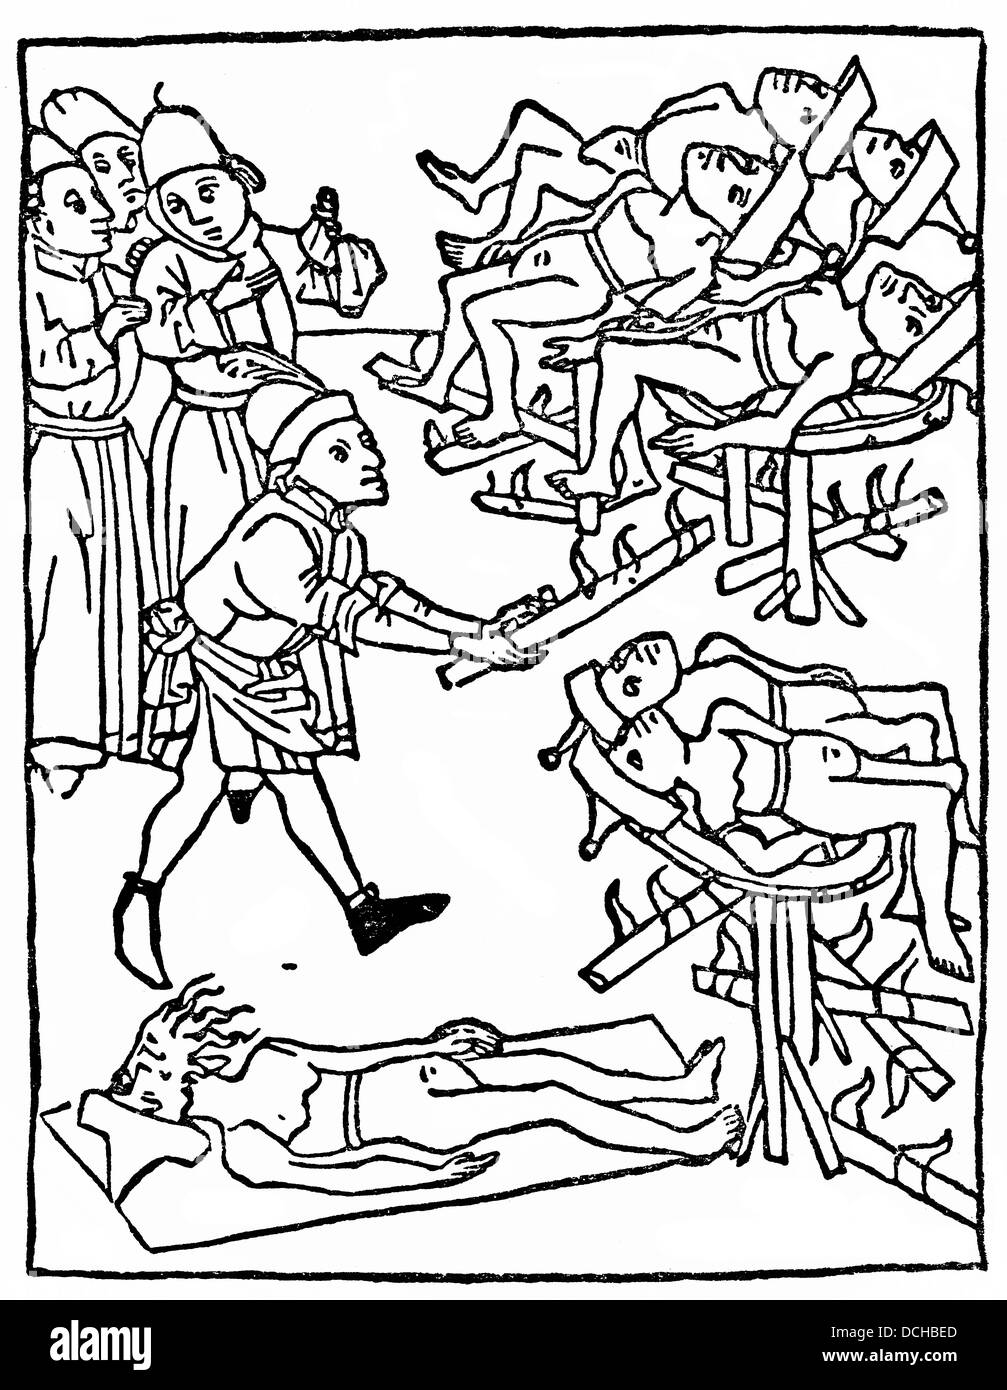 Folter von den Juden, mit jüdischen hüten, 1475, Beispiel der christlichen Antijudaismus im 15. Jahrhundert in Deutschland Stockfoto